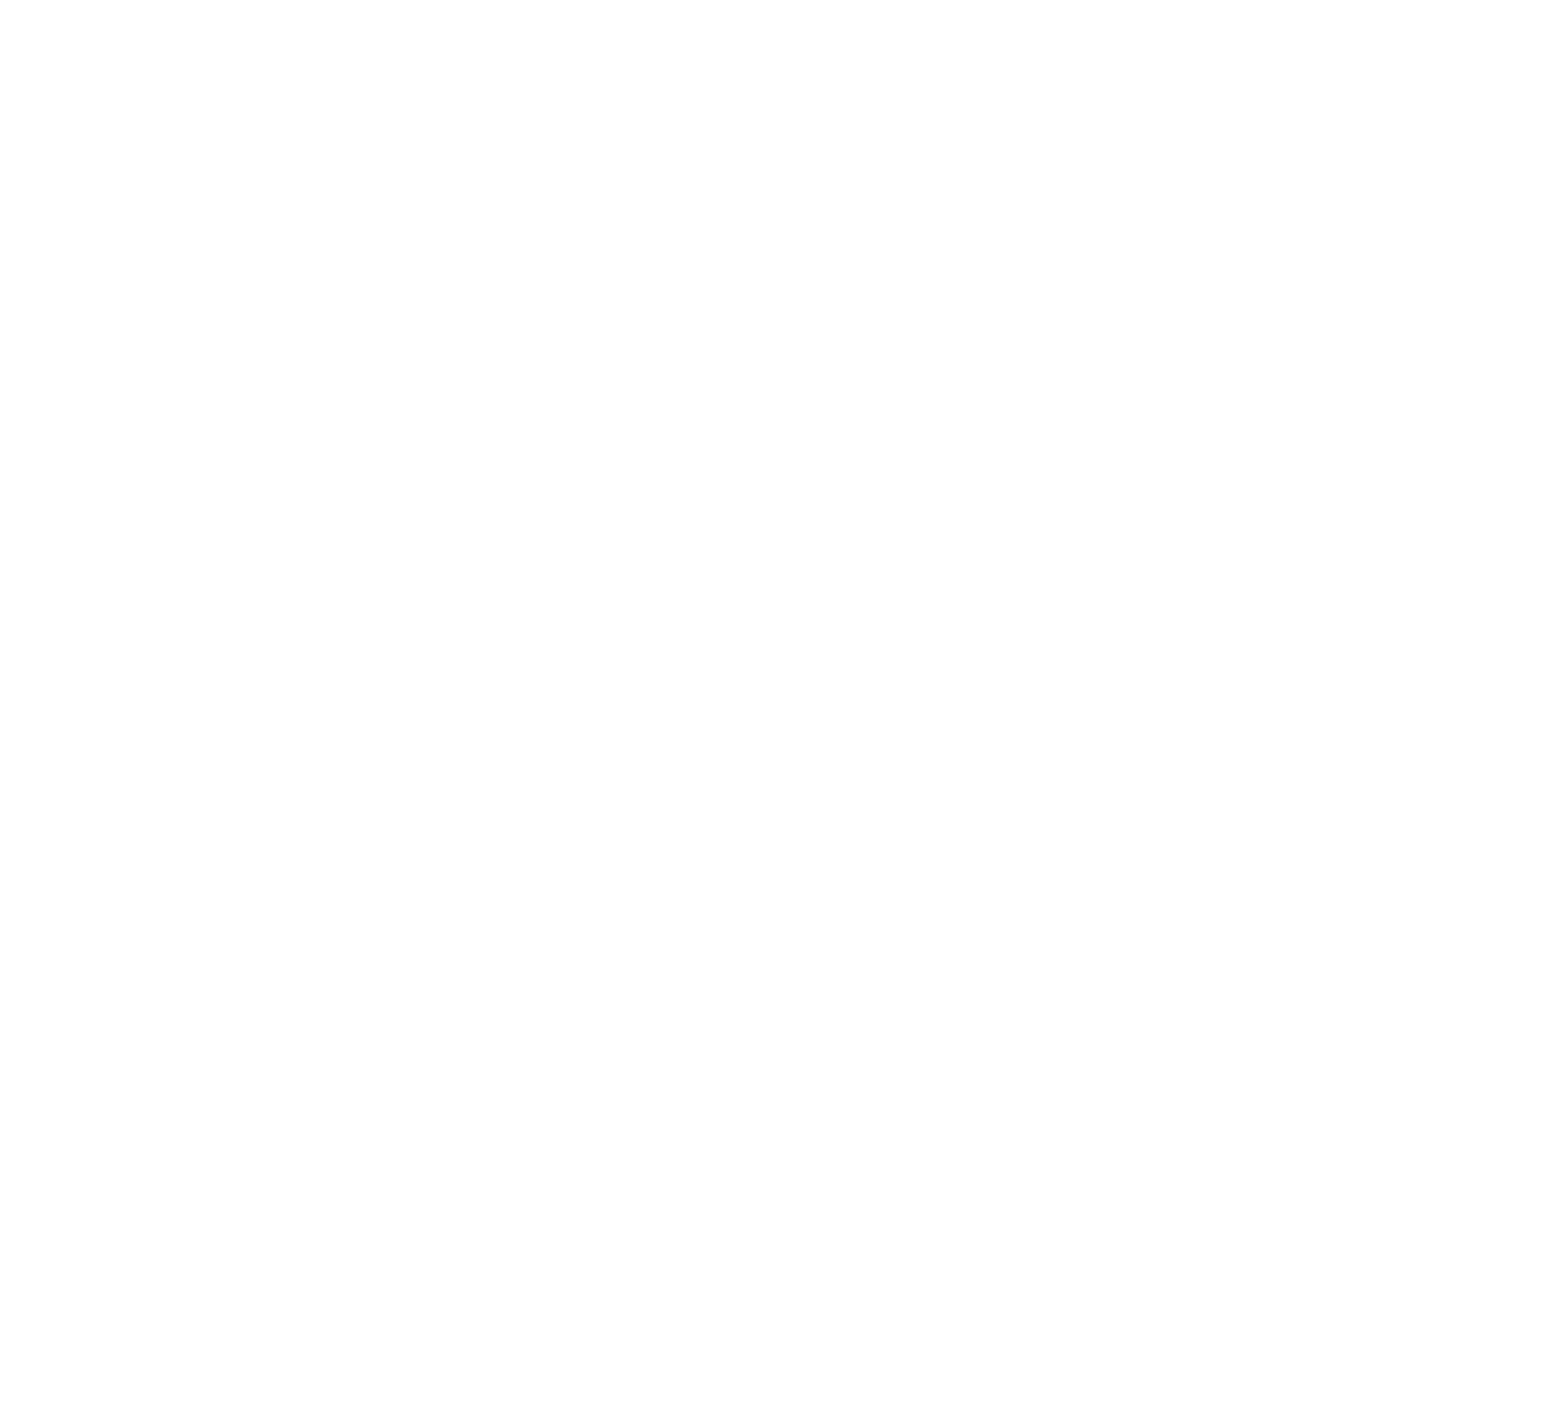 Avangrid logo pour fonds sombres (PNG transparent)